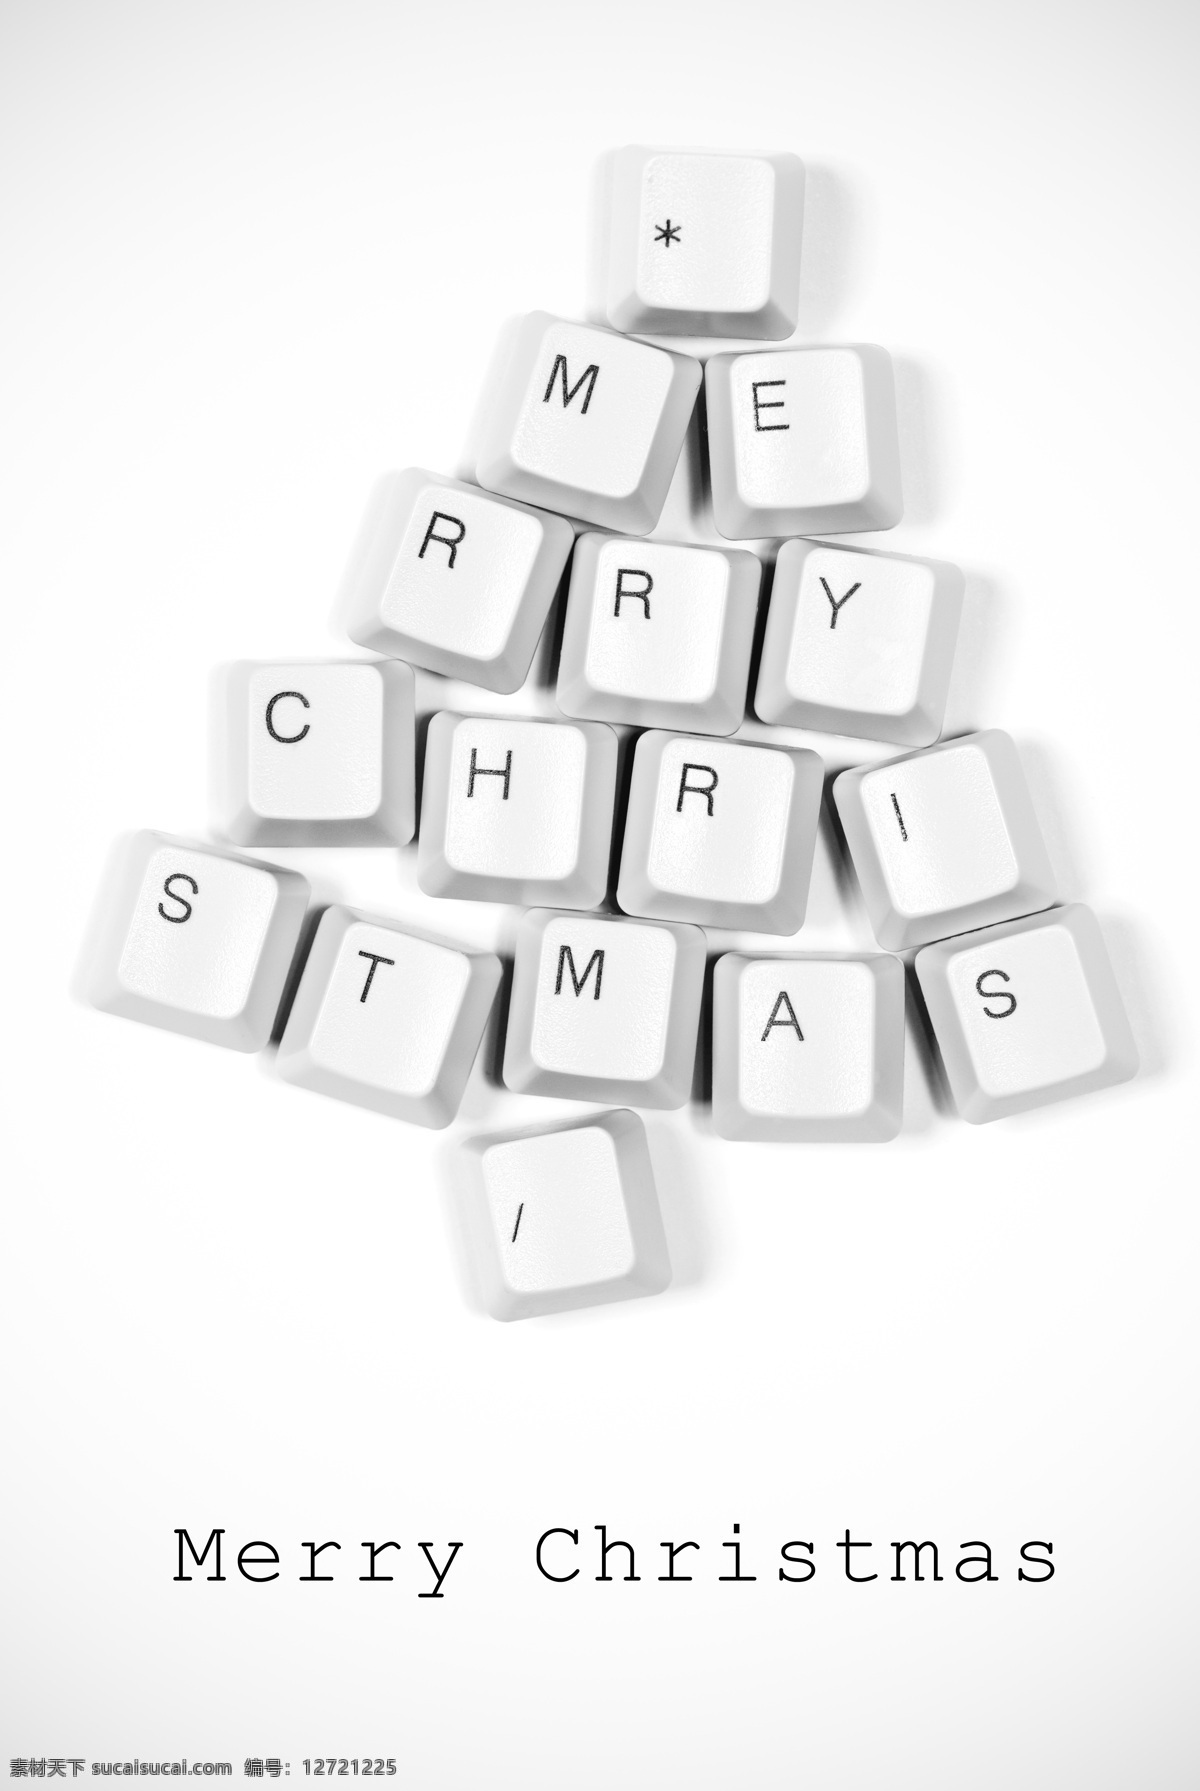 创意 圣诞树 键盘 按键 数码科技 创意图片 节日庆典 生活百科